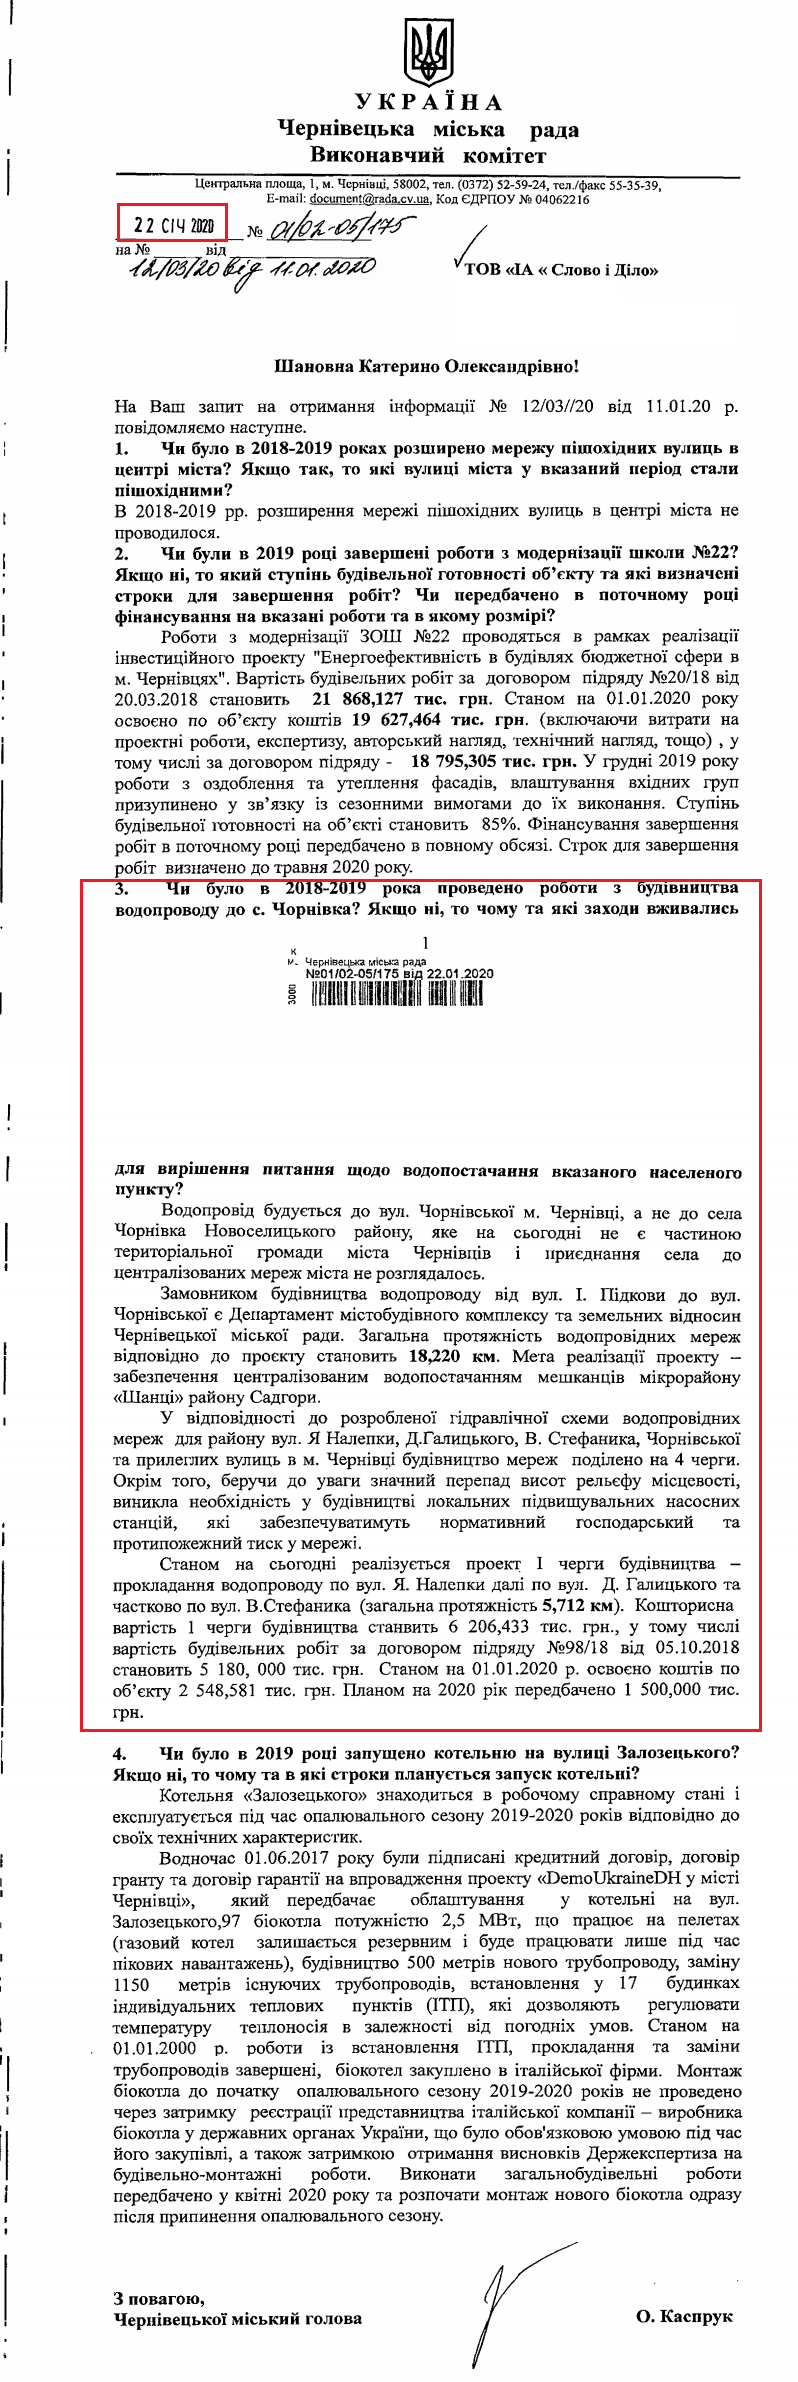 Лист Чернівецької міськради від 22 січня 2020 року